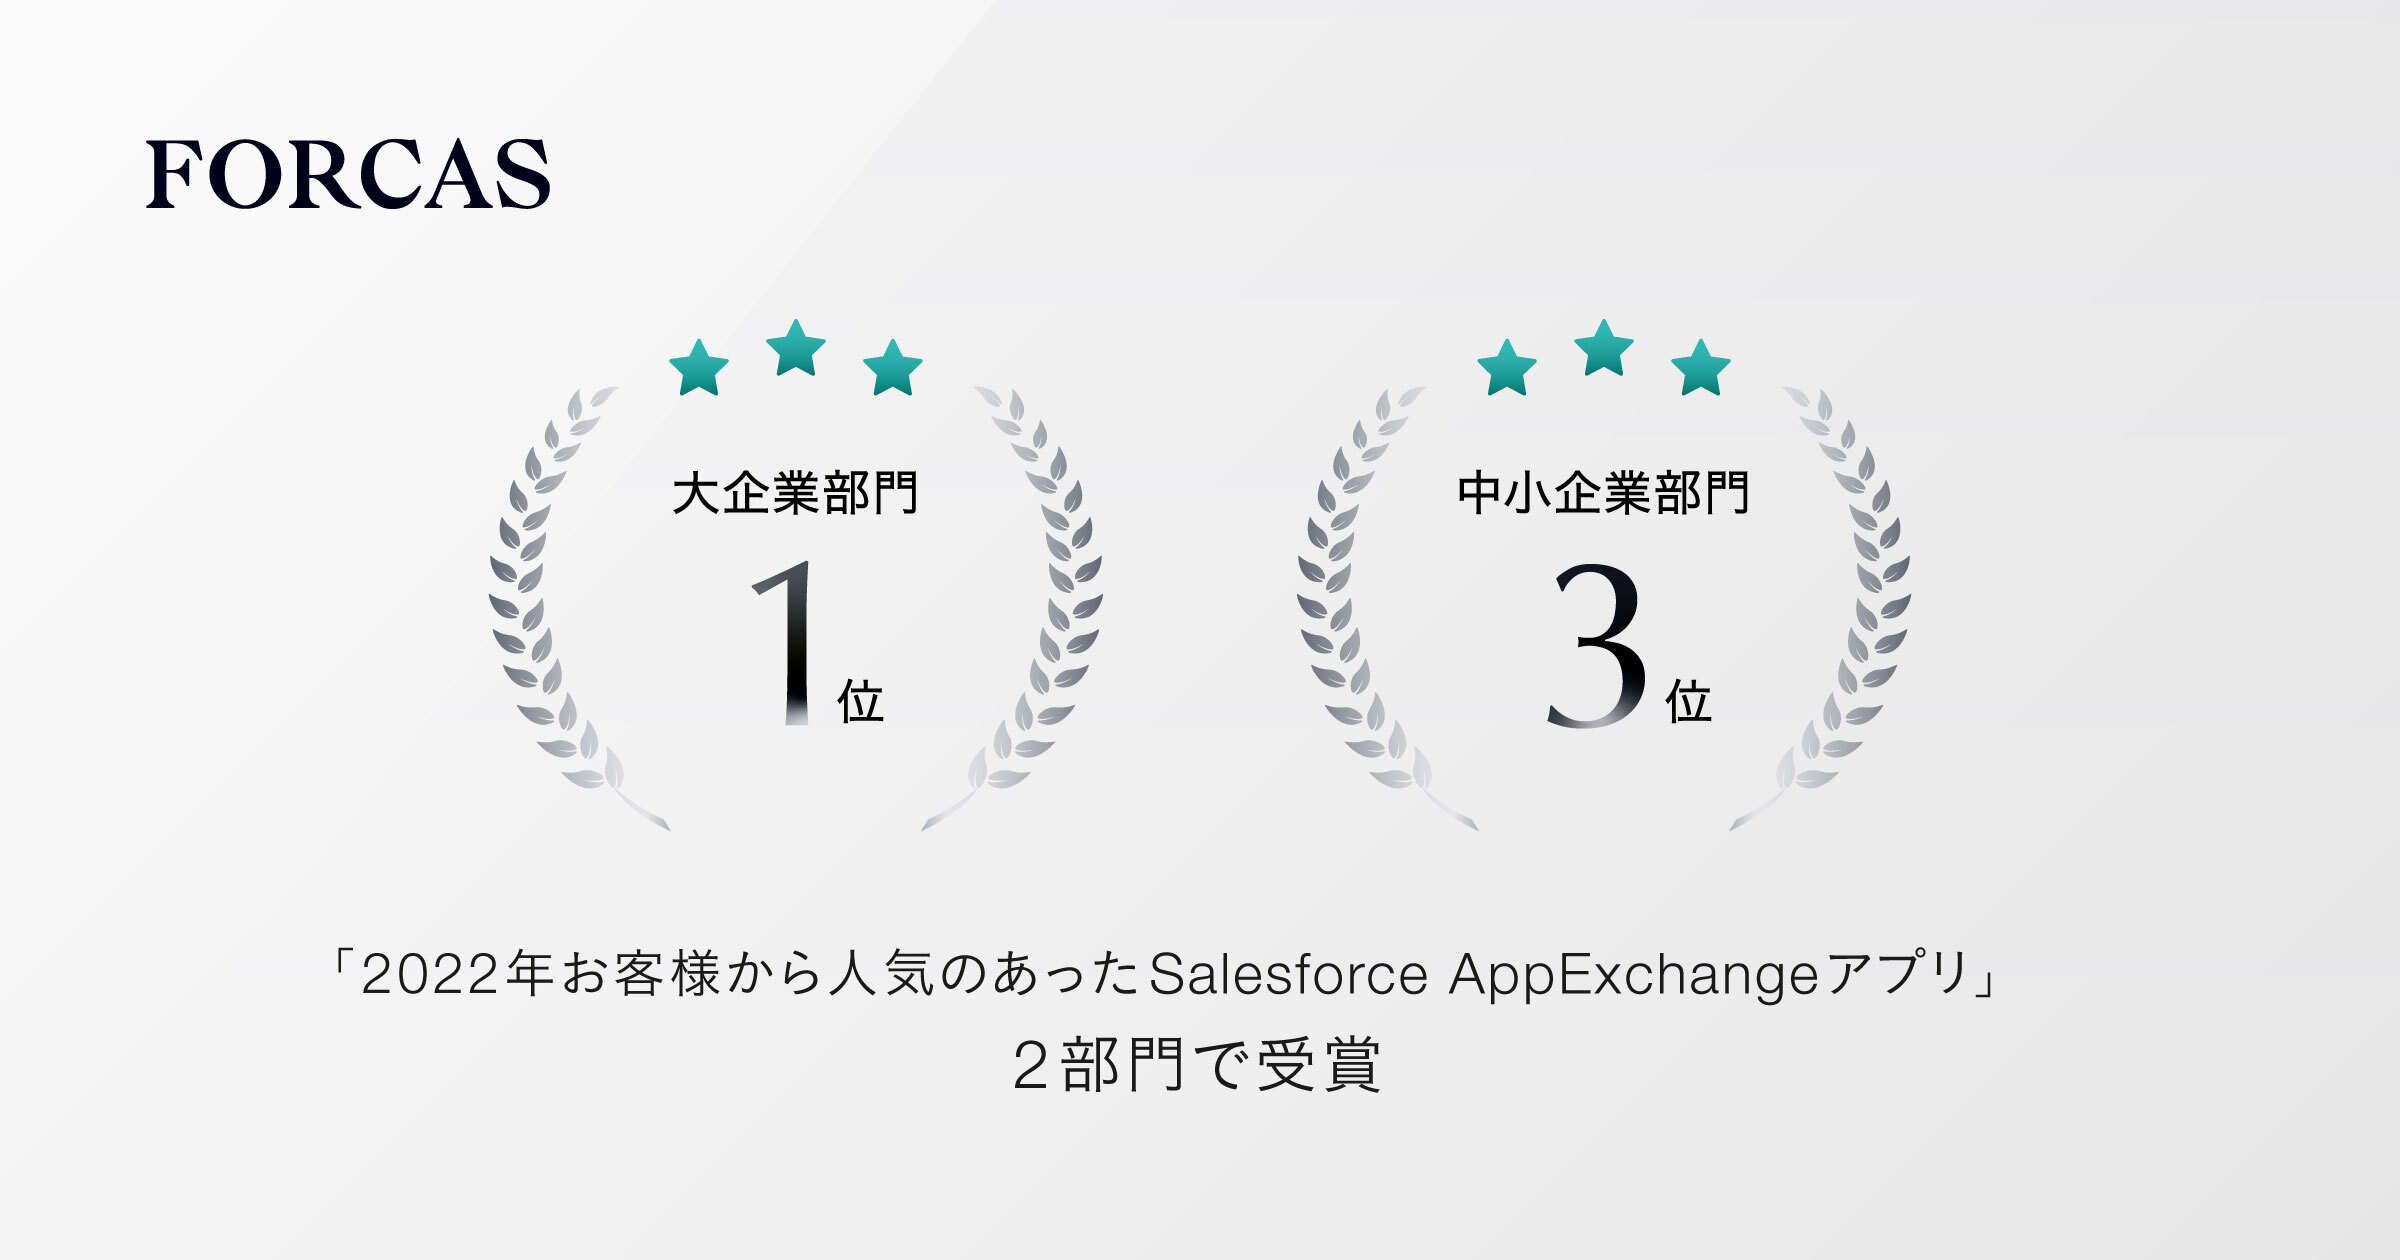 FORCAS、「2022年お客様から人気のあったSalesforce AppExchangeアプリ」の大企業部門にて1位を獲得